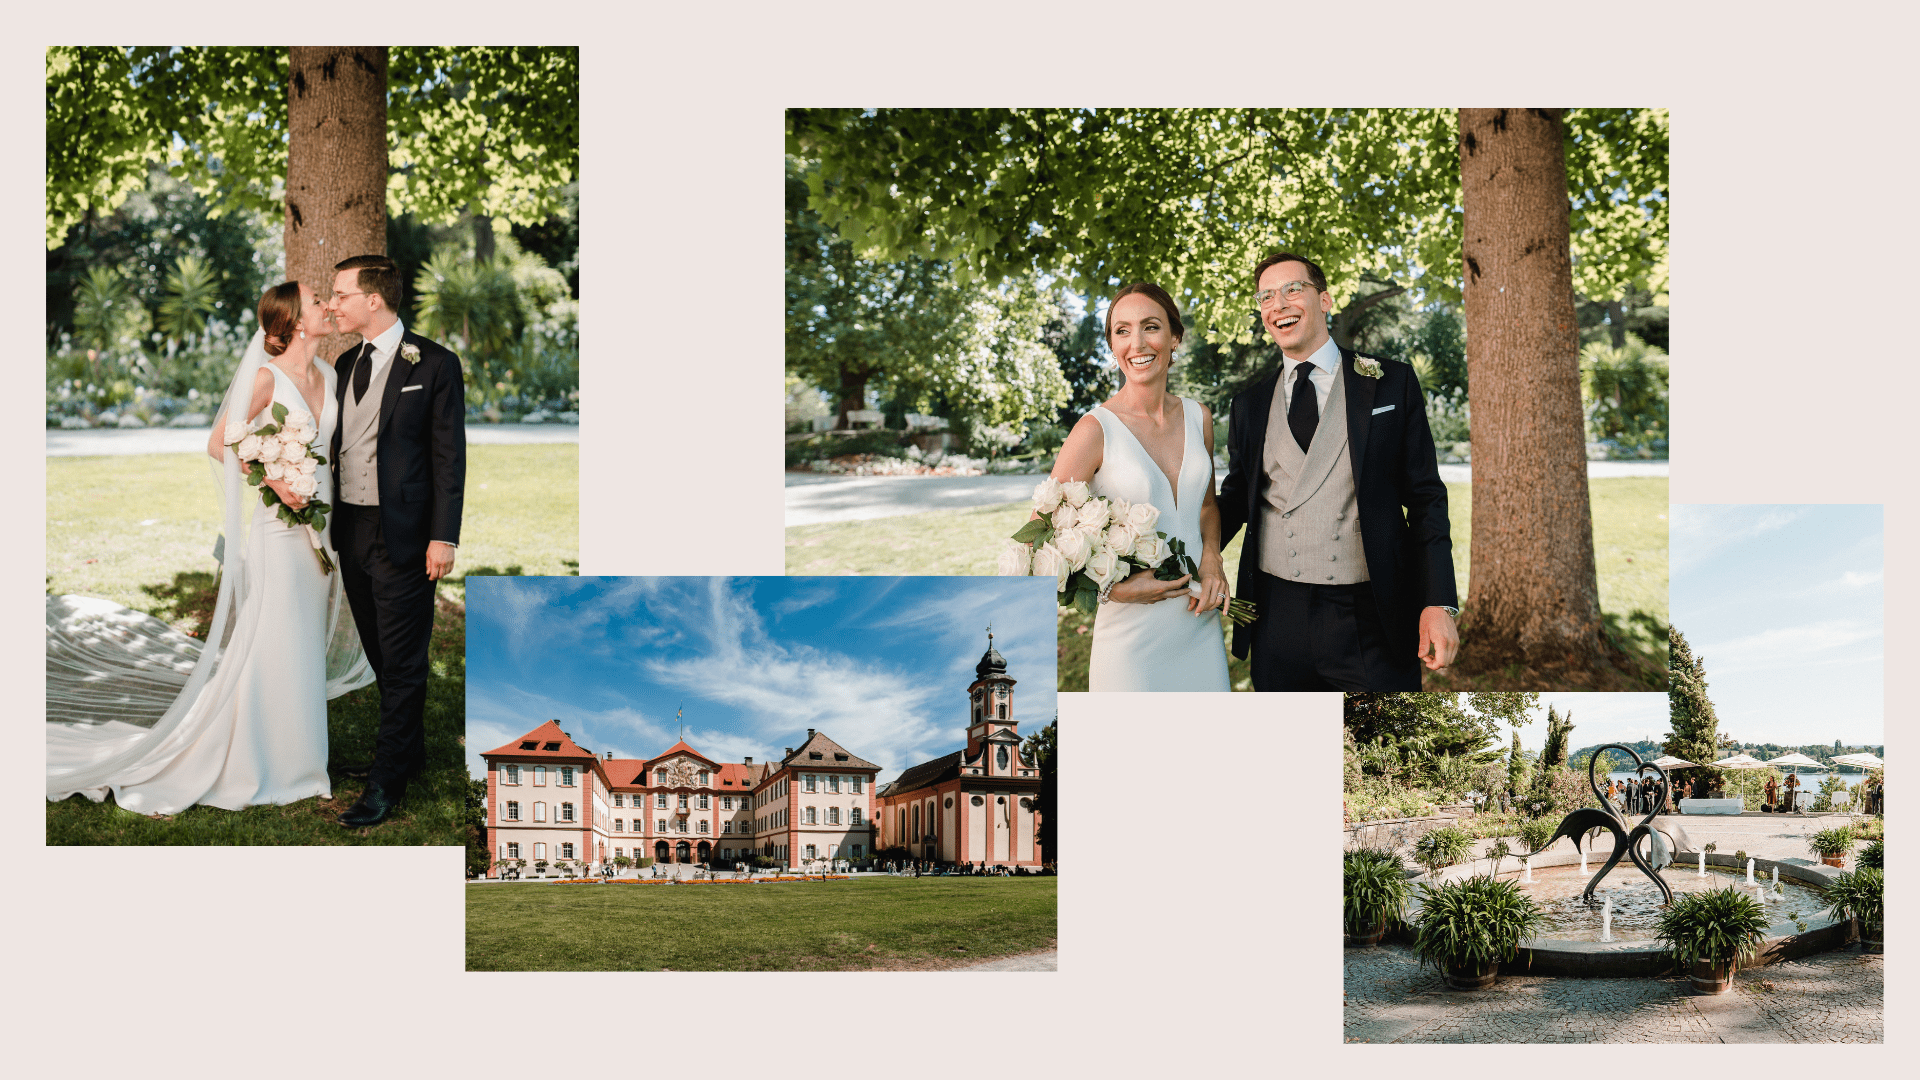 Aida + Tim | Hochzeitsfotografen am Bodensee Insel Mainau - Hochzeit in Deutschland  - Hochzeitsfotografie von Aida und Tim